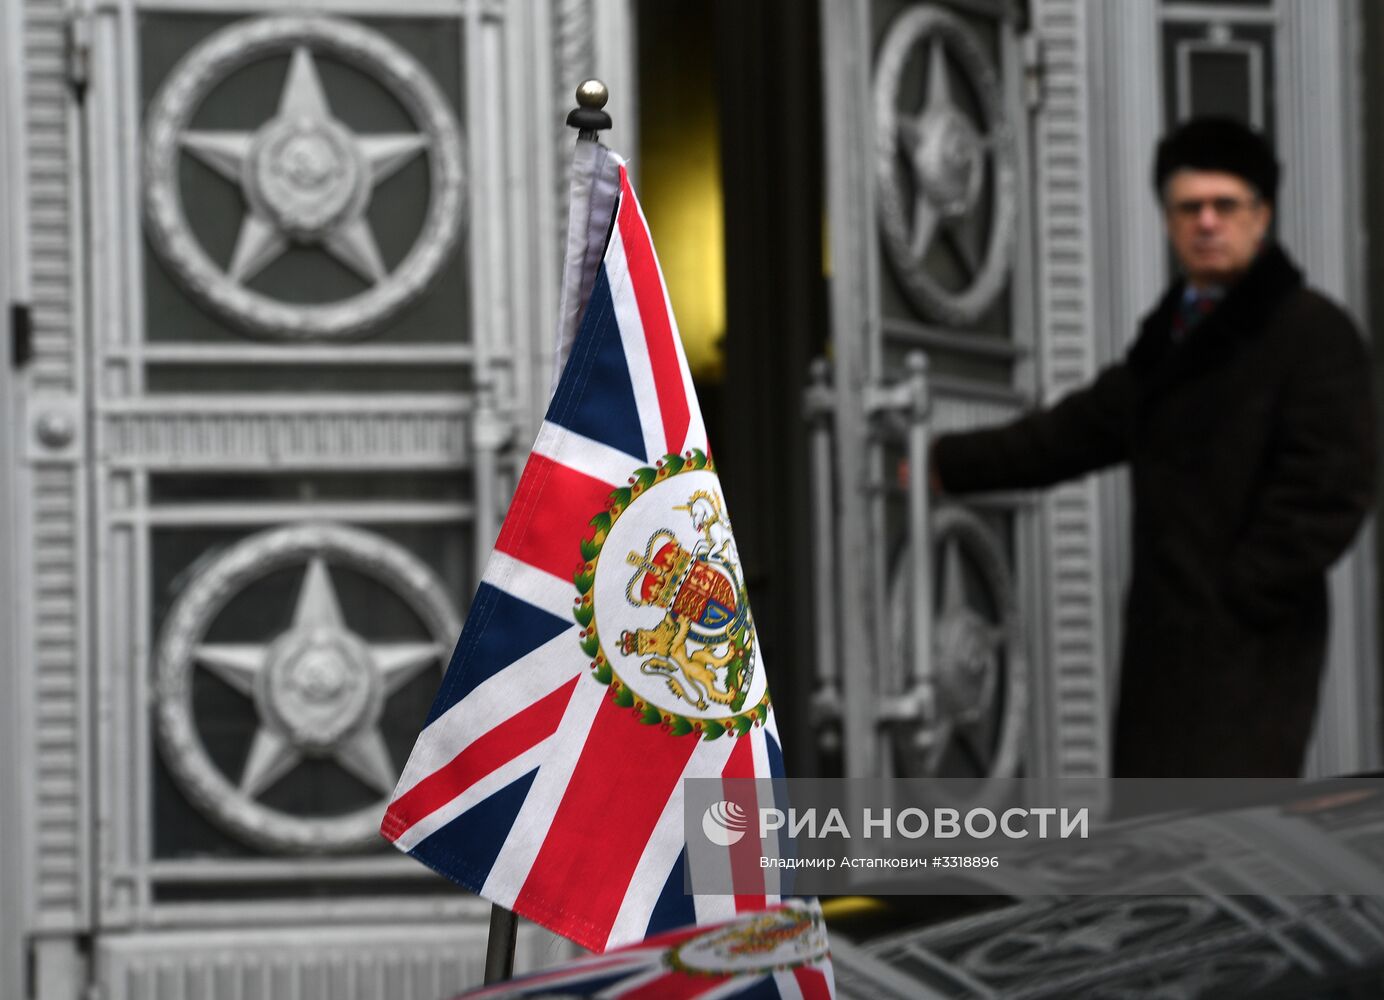 Посол Великобритании Лори Бристоу вызван в МИД РФ